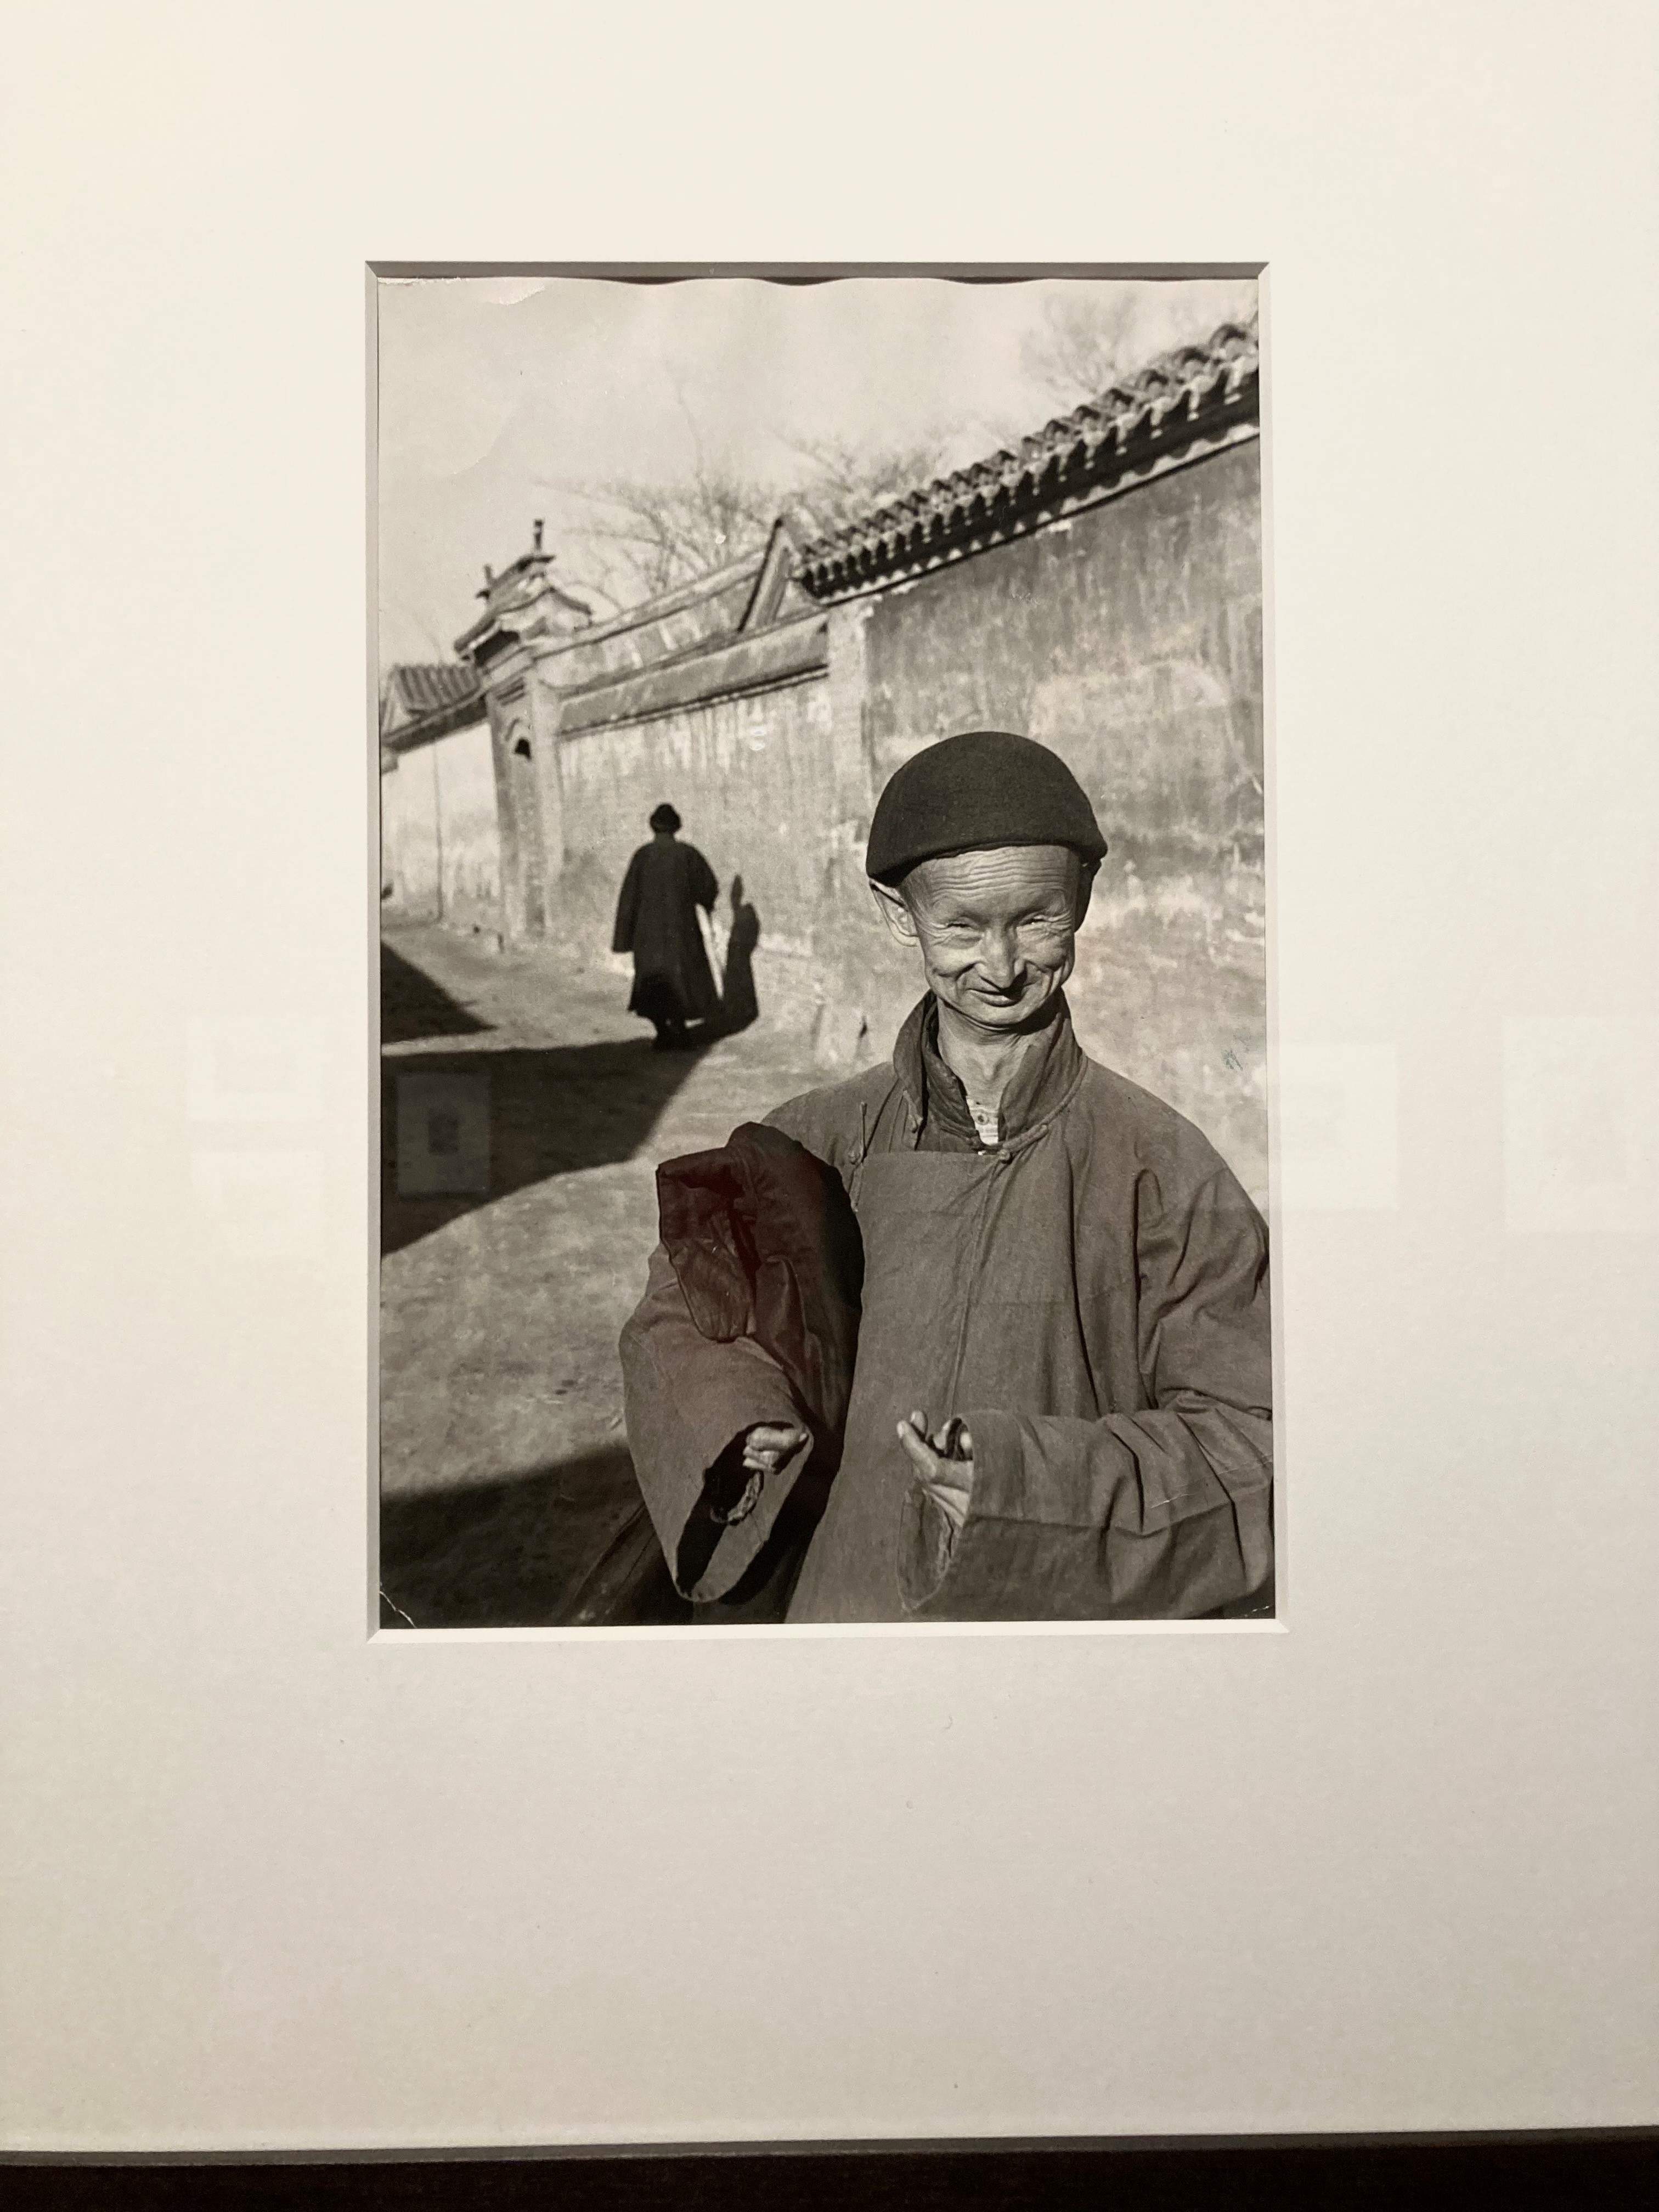 MOSTRE / La Cina che fu, con gli occhi di Cartier Bresson